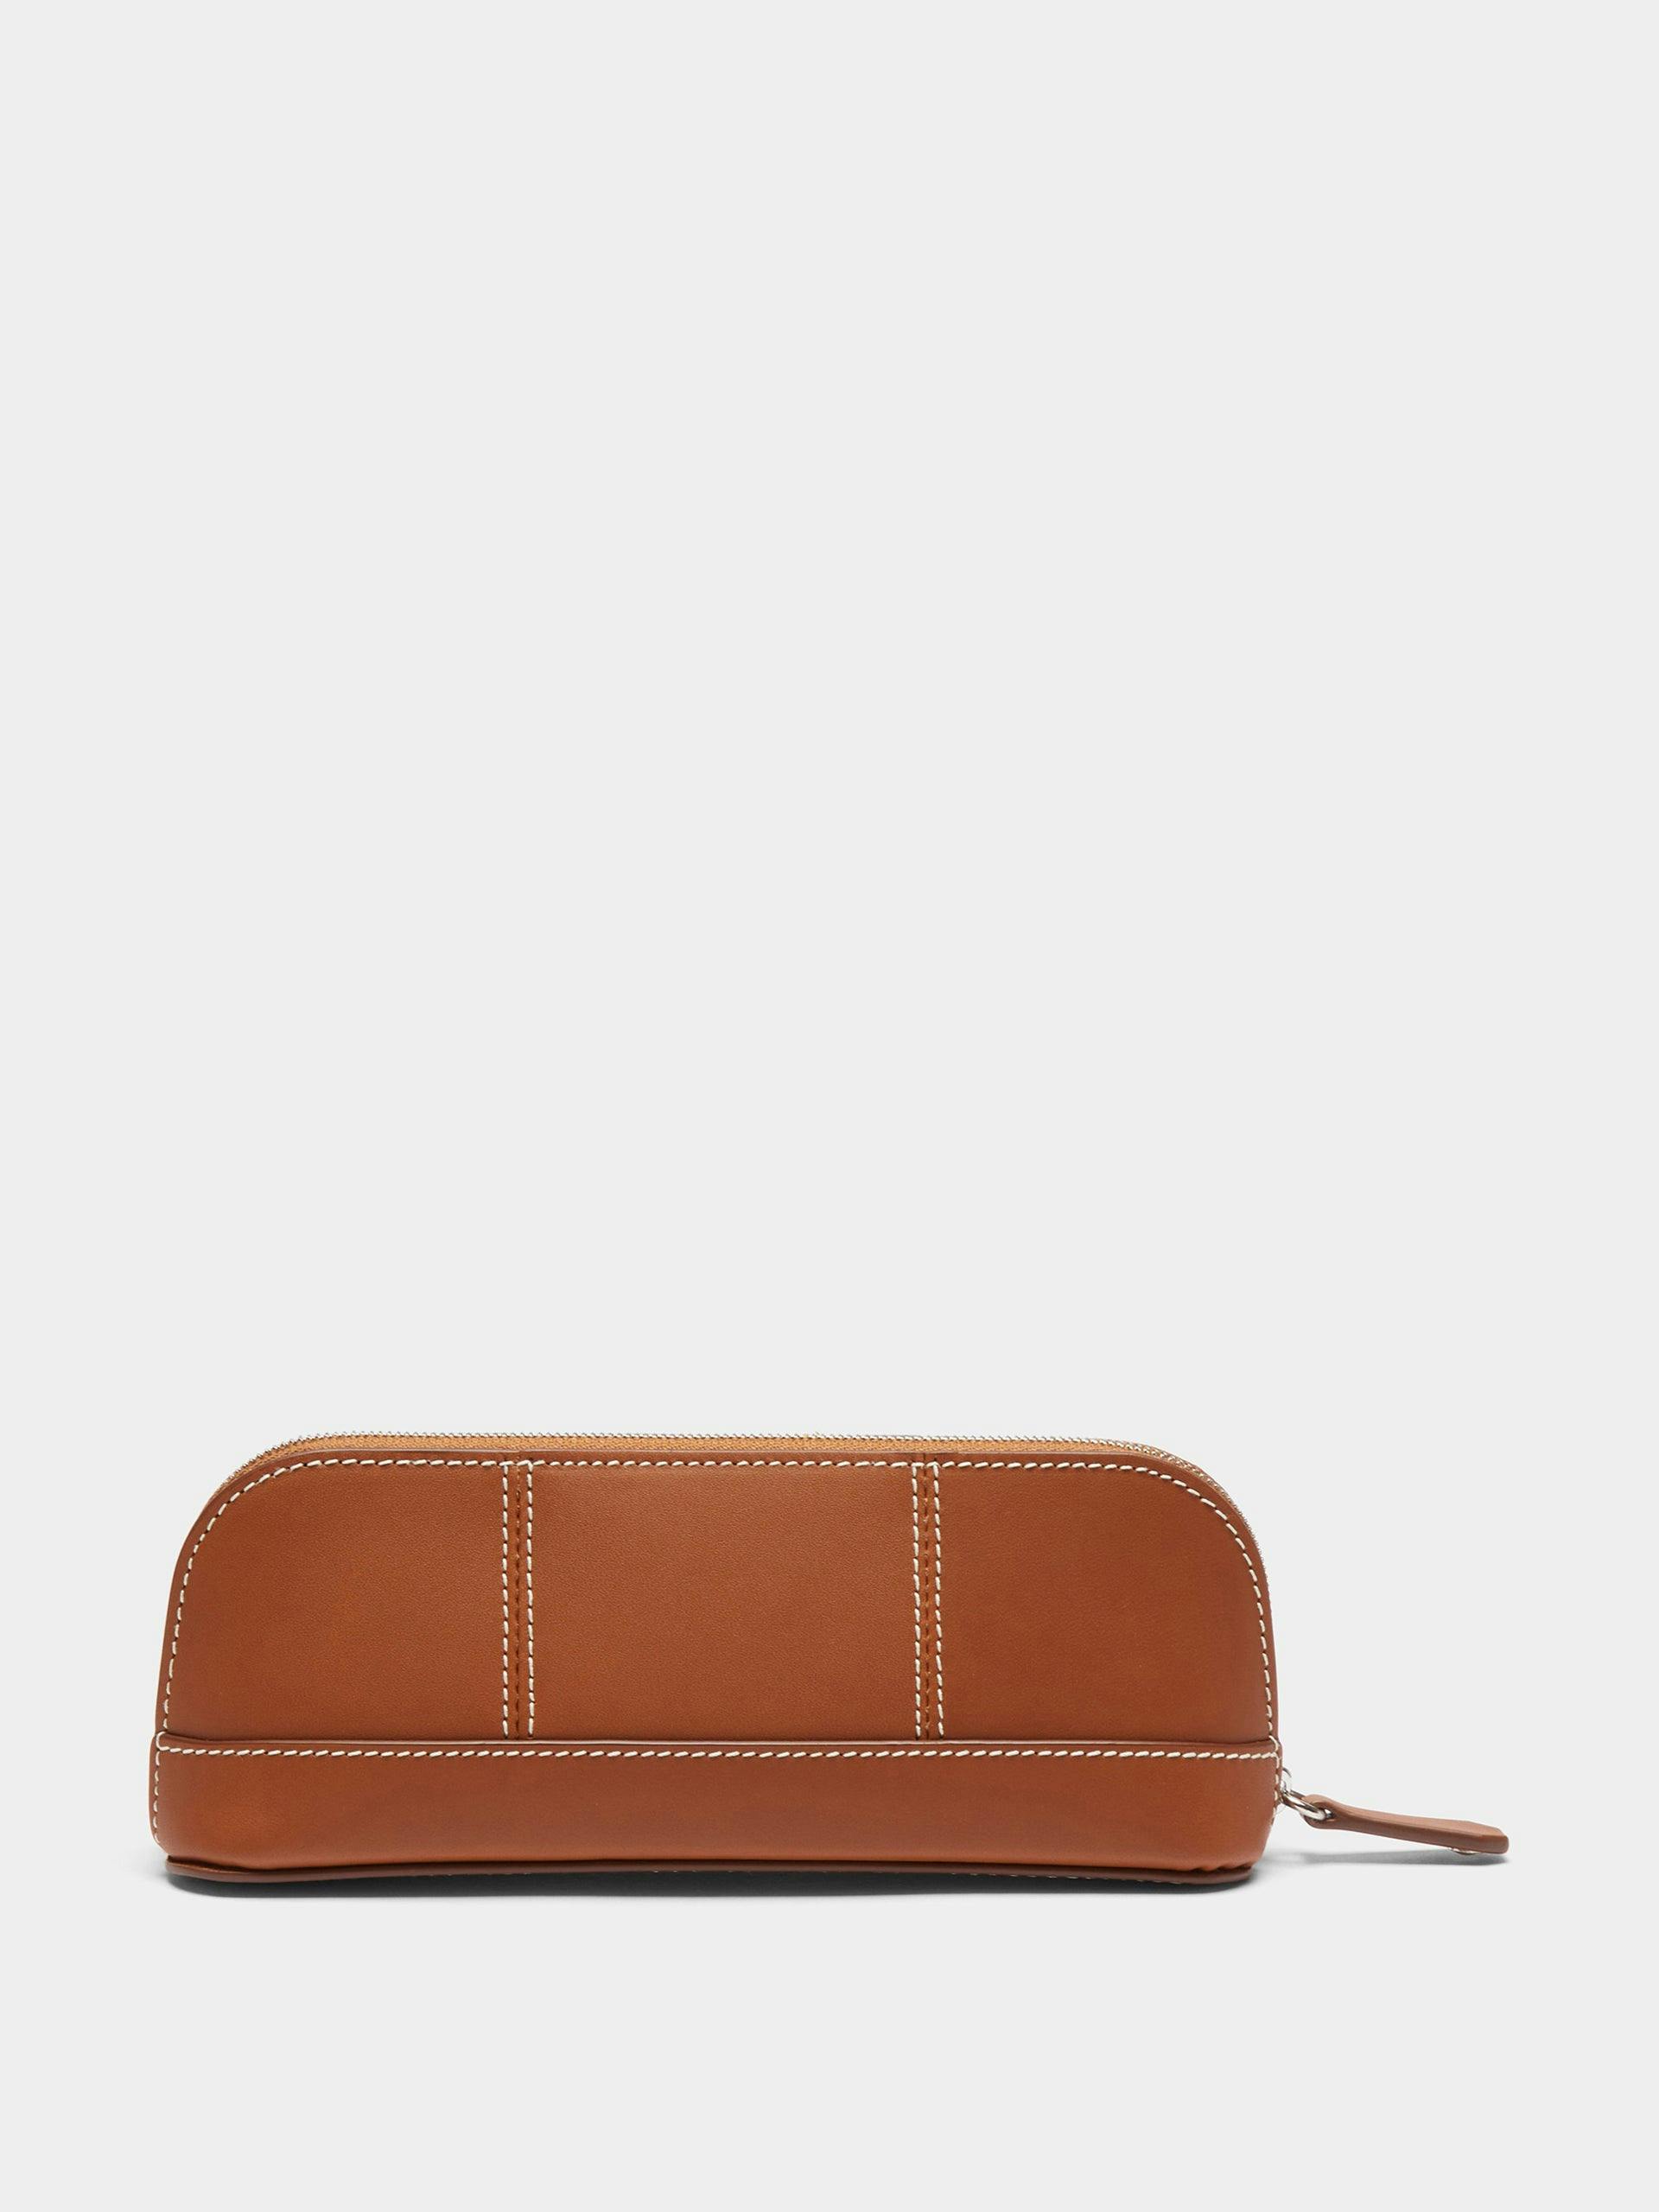 Tan leather pencil case